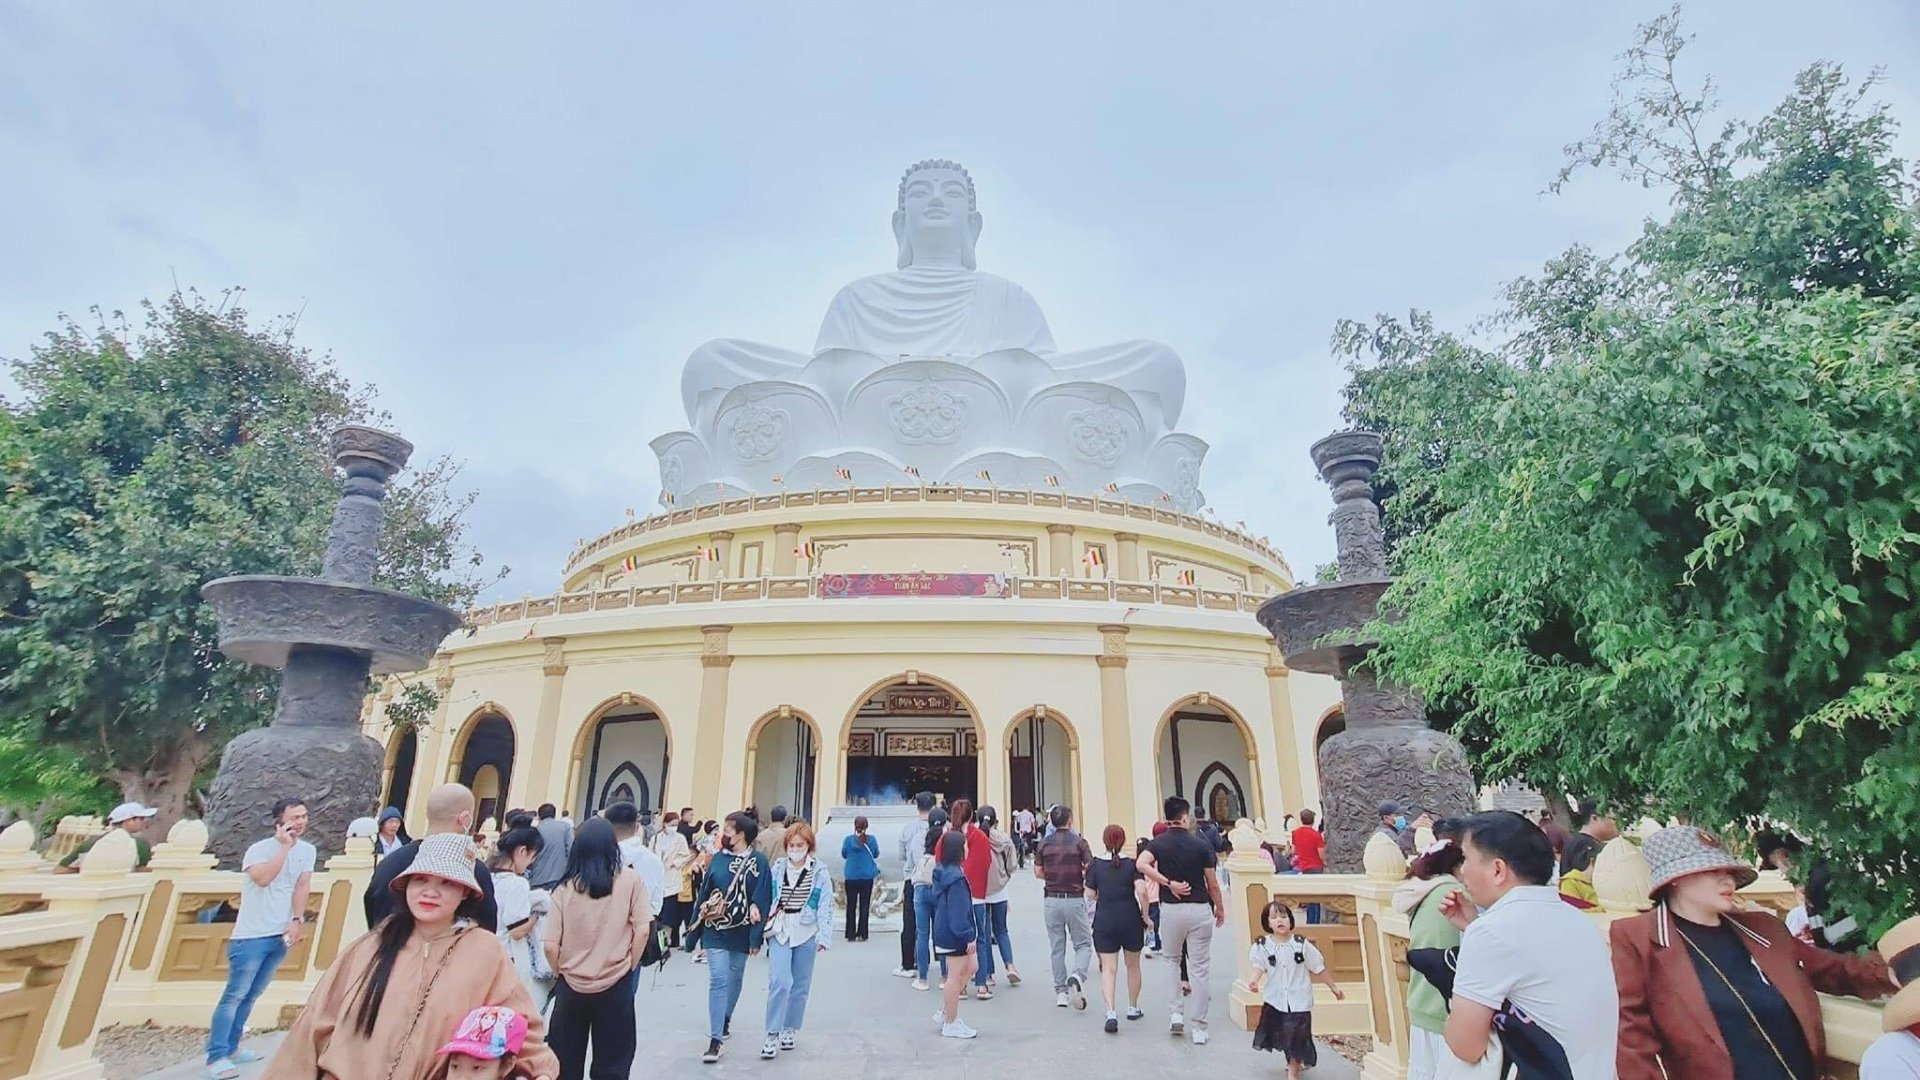 Tượng Thích Ca Mâu Ni Phật (hay còn gọi là tượng Phật ngồi) có chiều cao 69m, riêng chân đế tượng Phật cao 15m và có đường kính 52m.